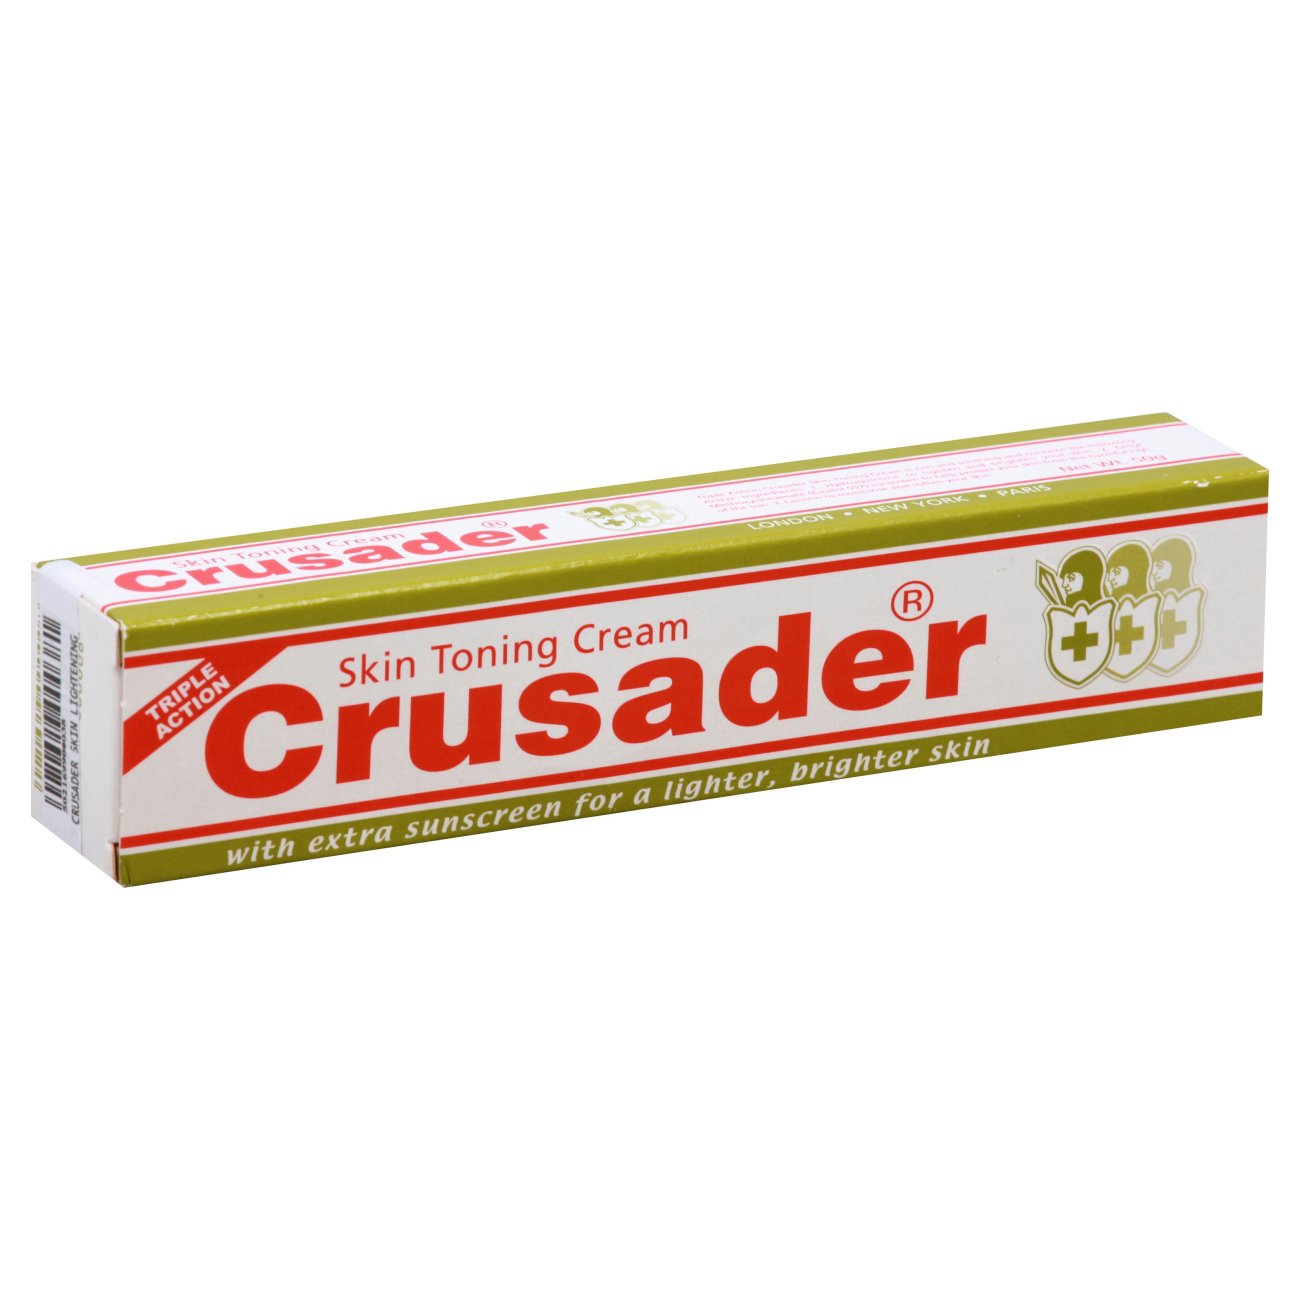 Crusader Skin Toning Cream Triple Action 1.76 oz.